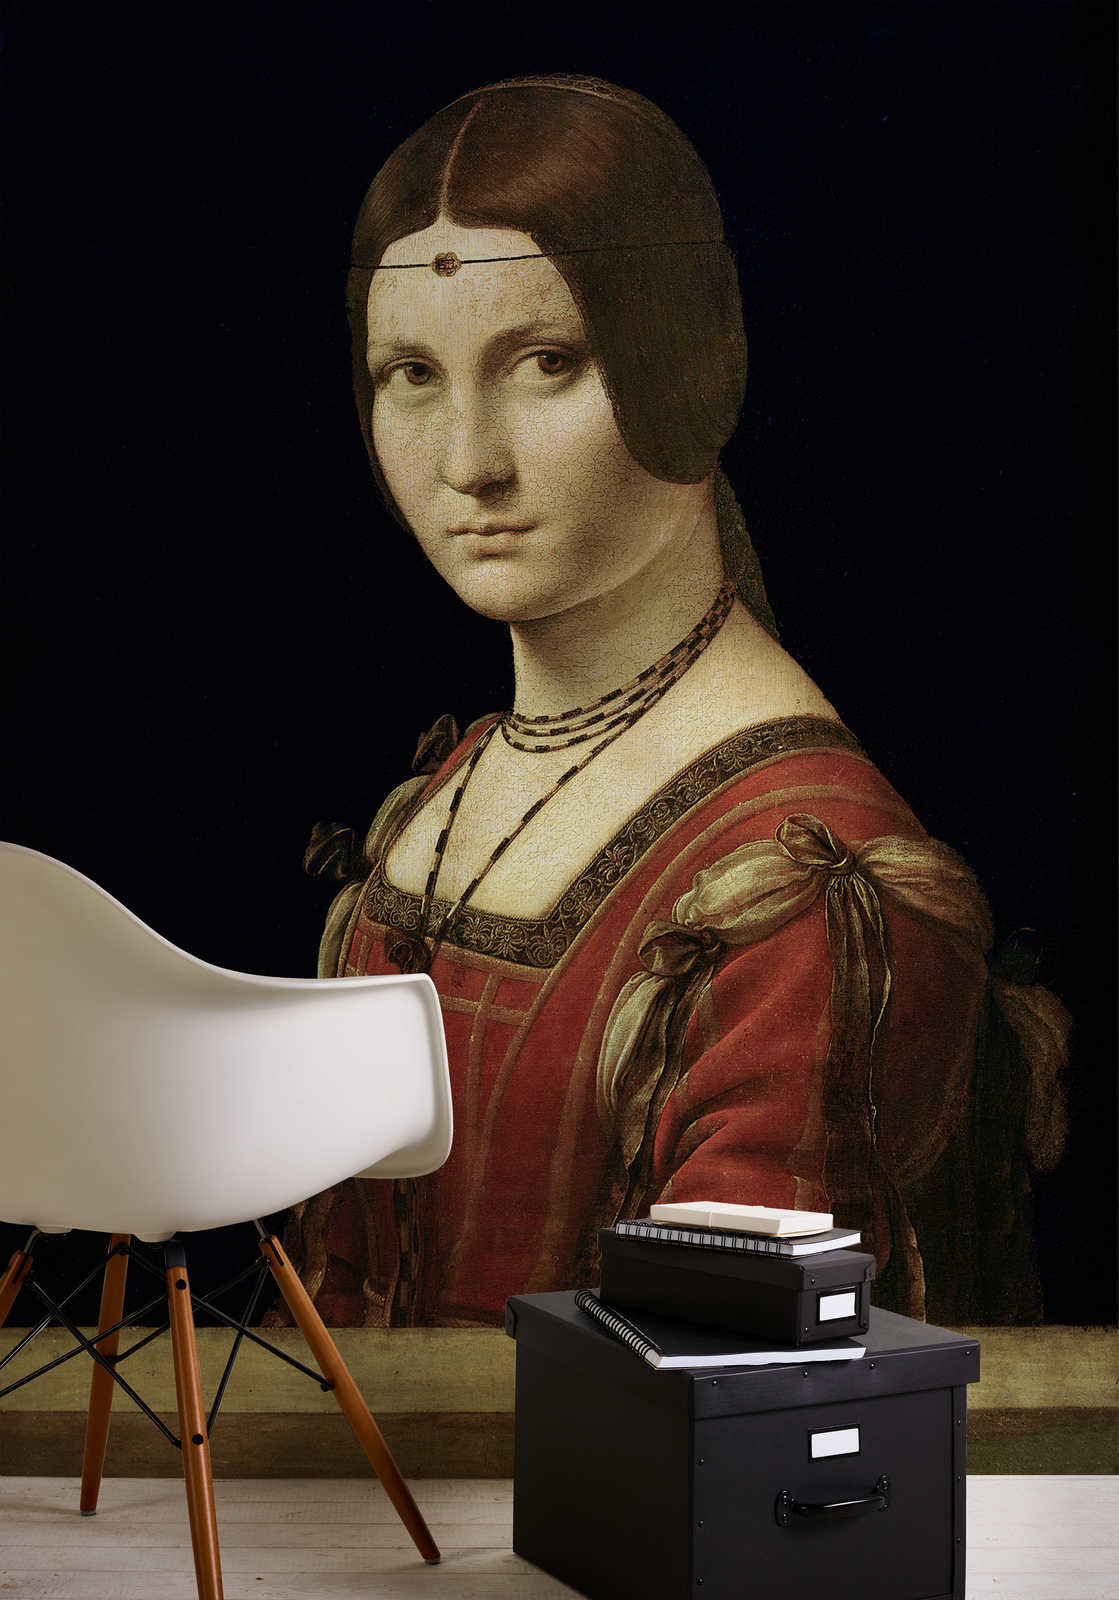             Portret van een dame aan het hof van Milaan" muurschildering door Leonardo da Vinci
        